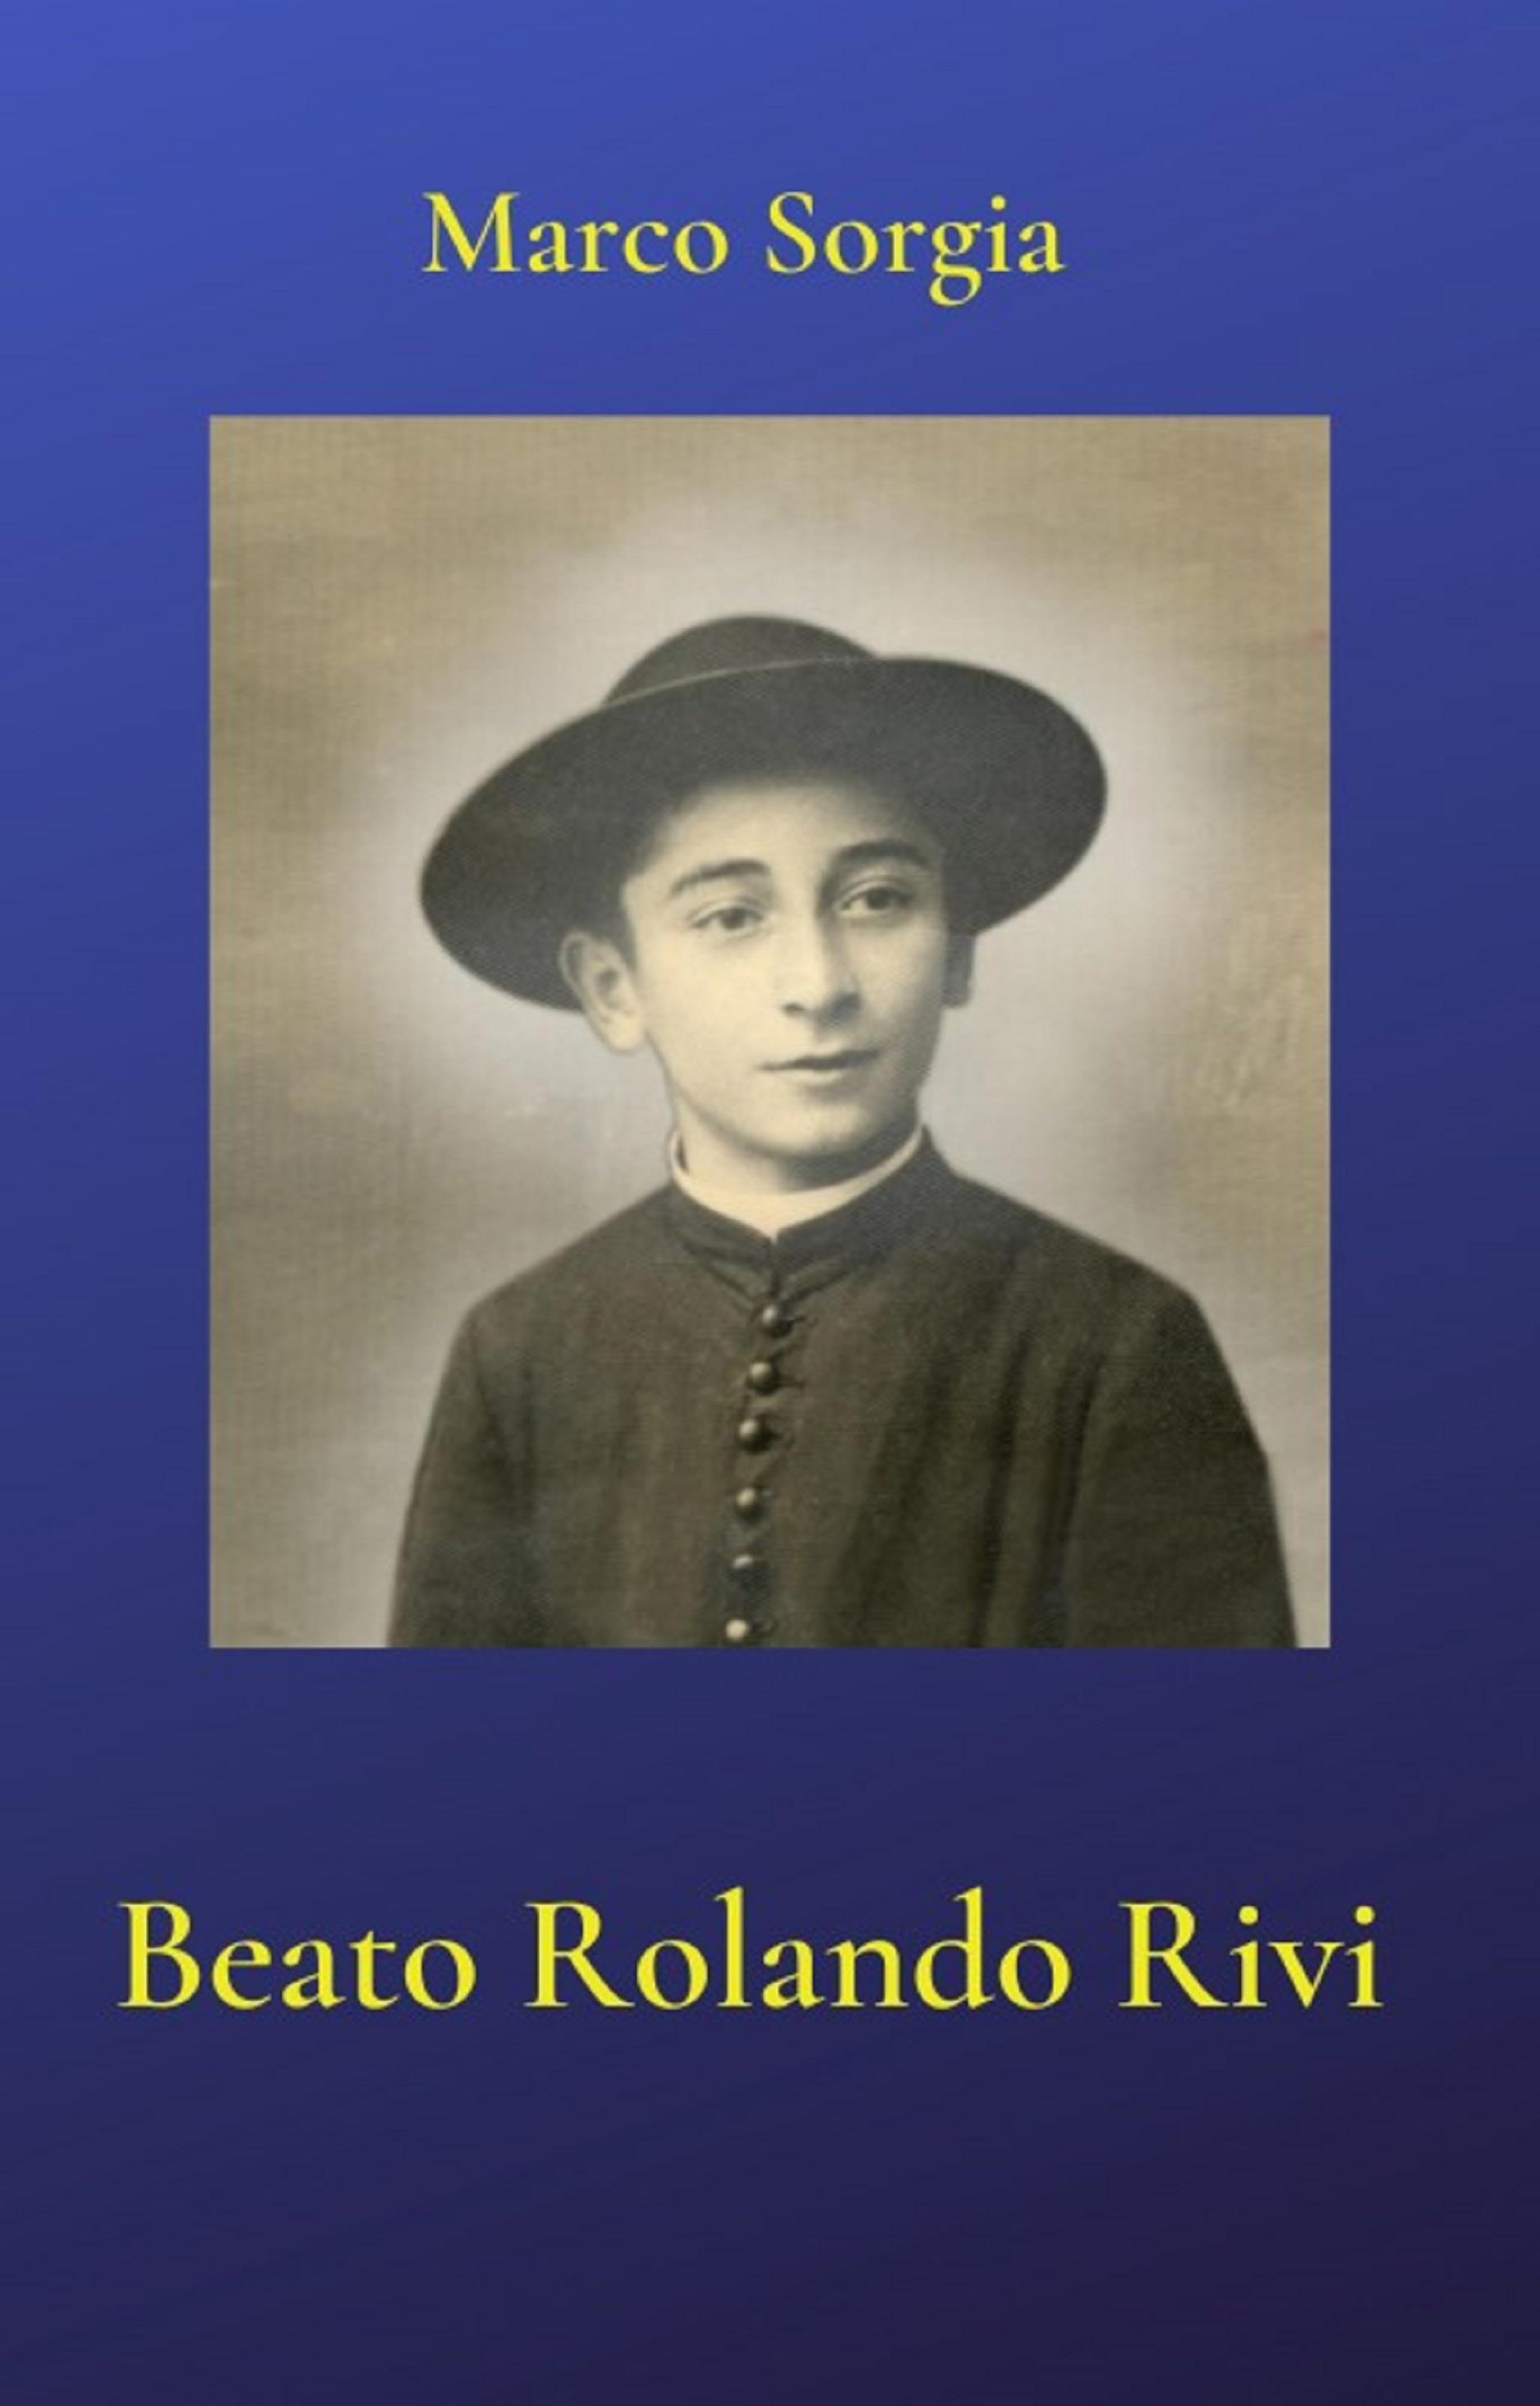 Beato Rolando Rivi